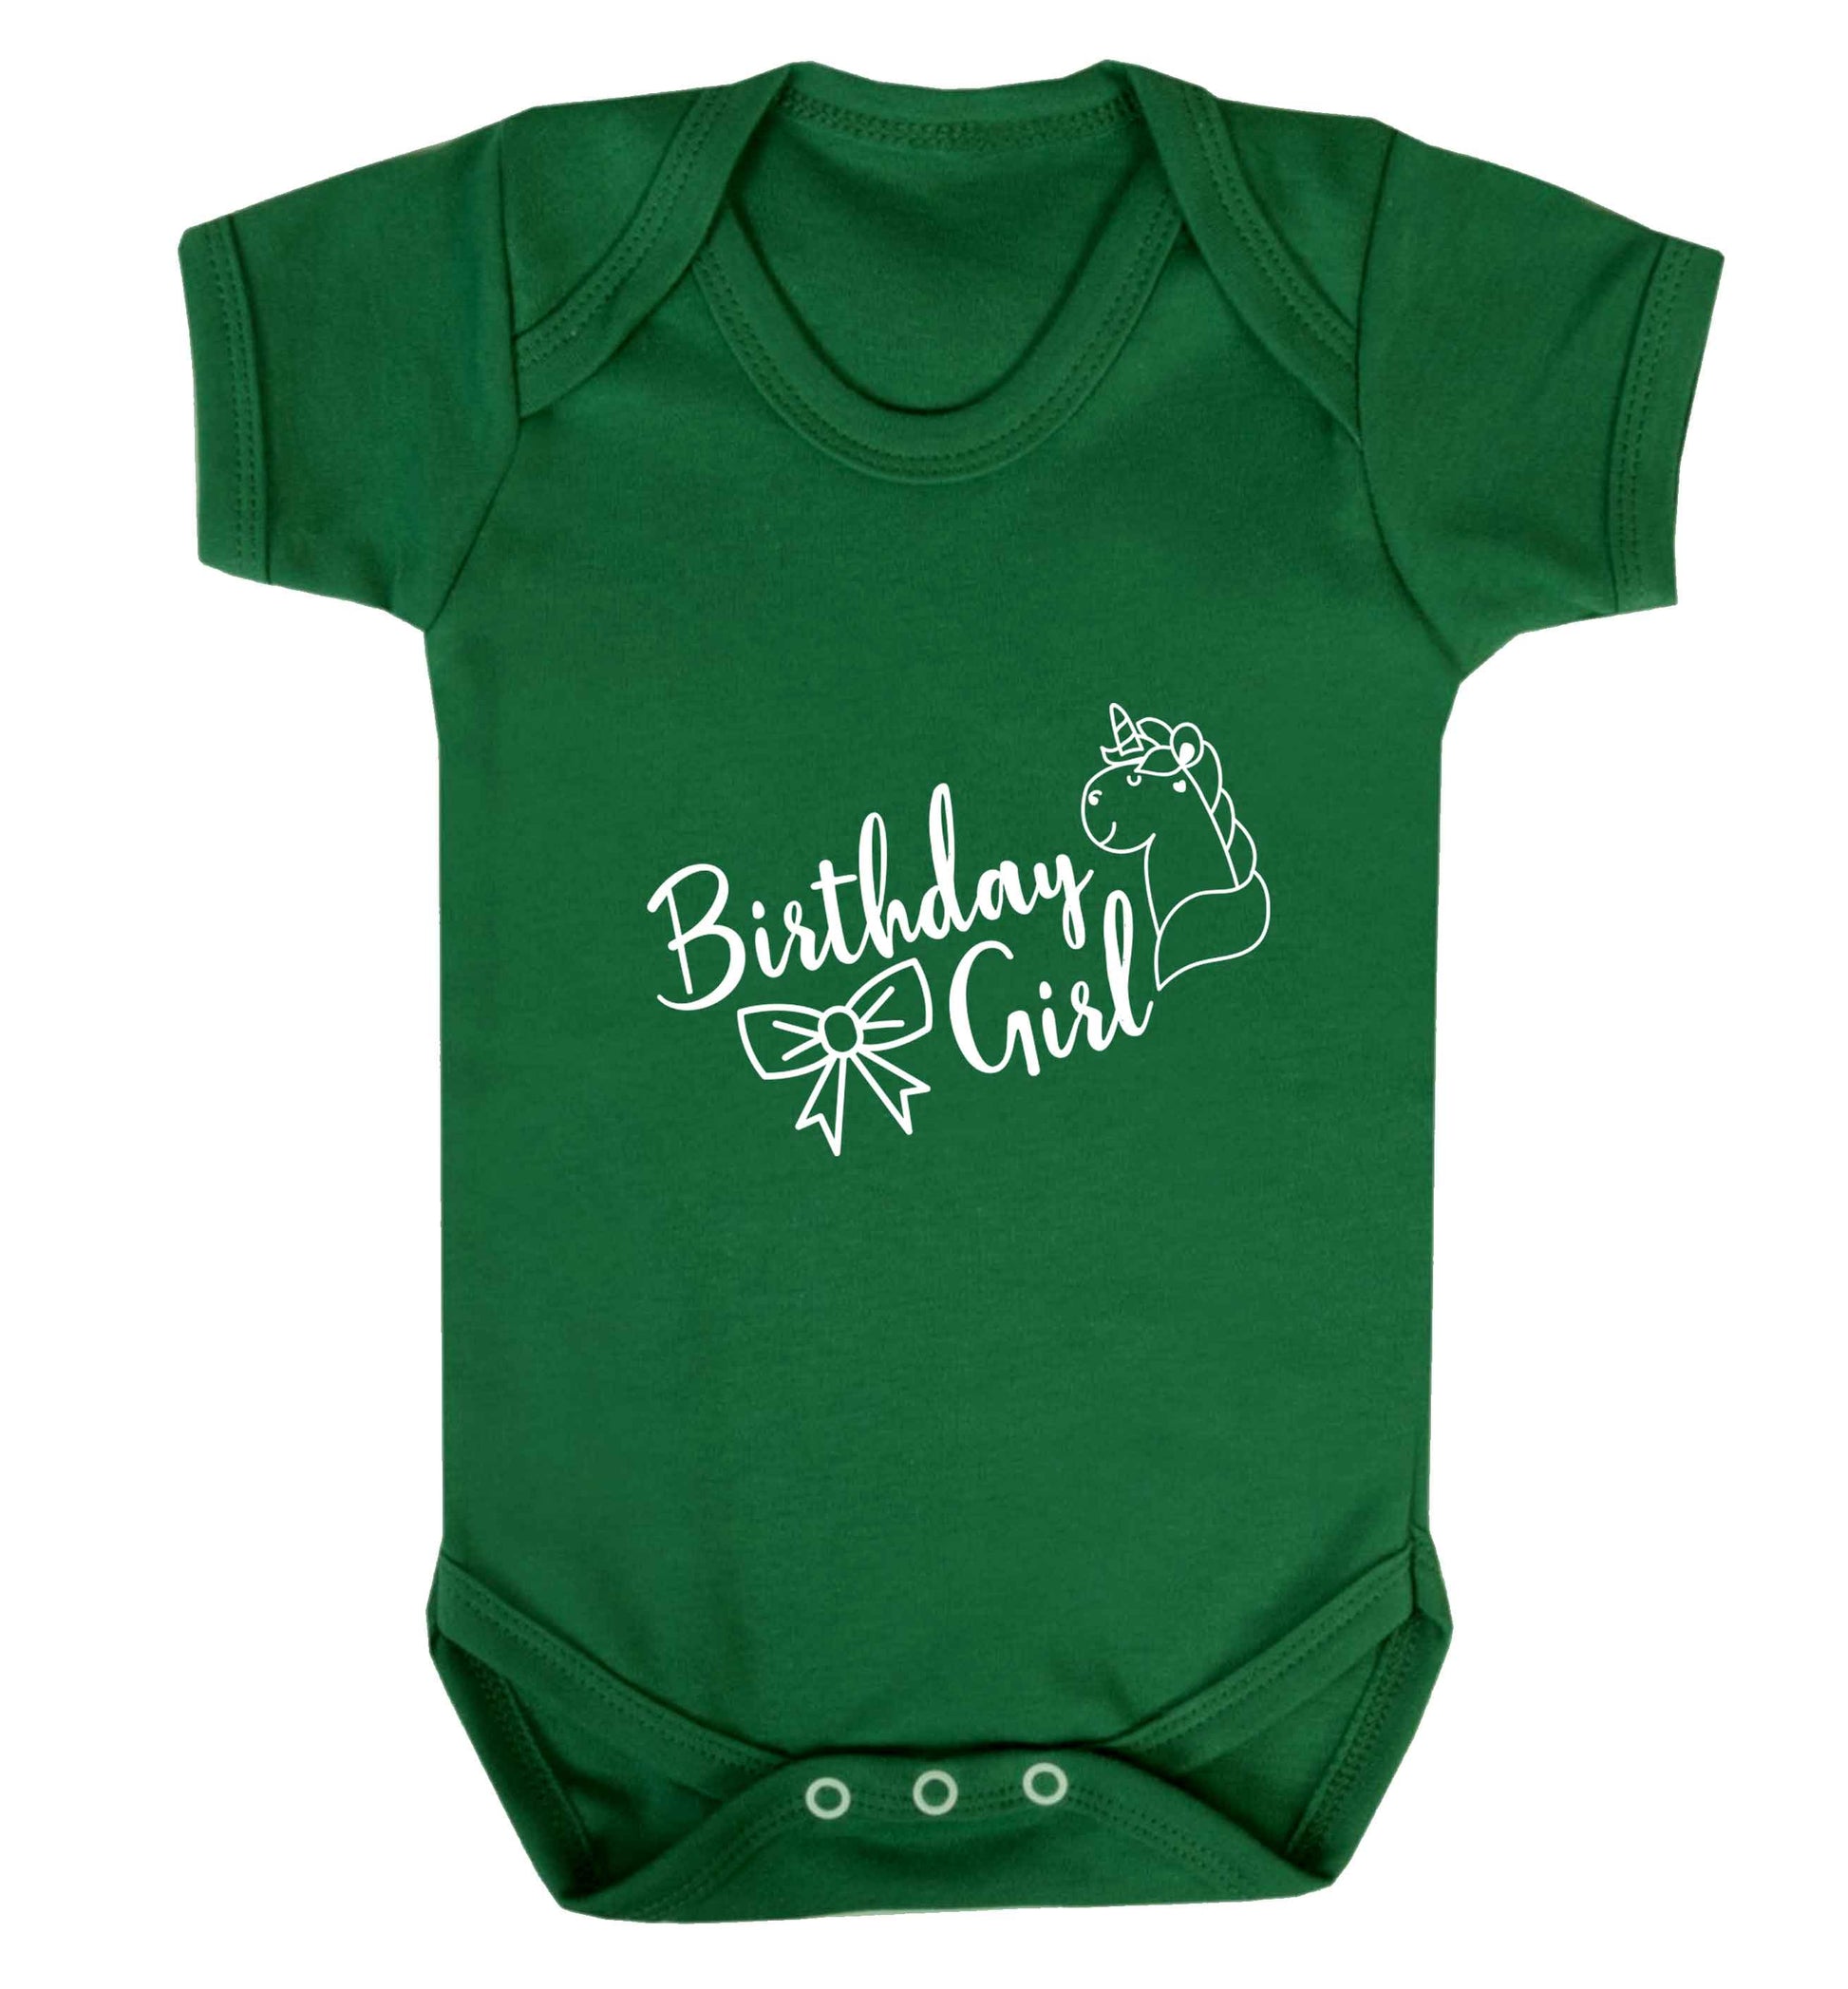 Birthday girl baby vest green 18-24 months